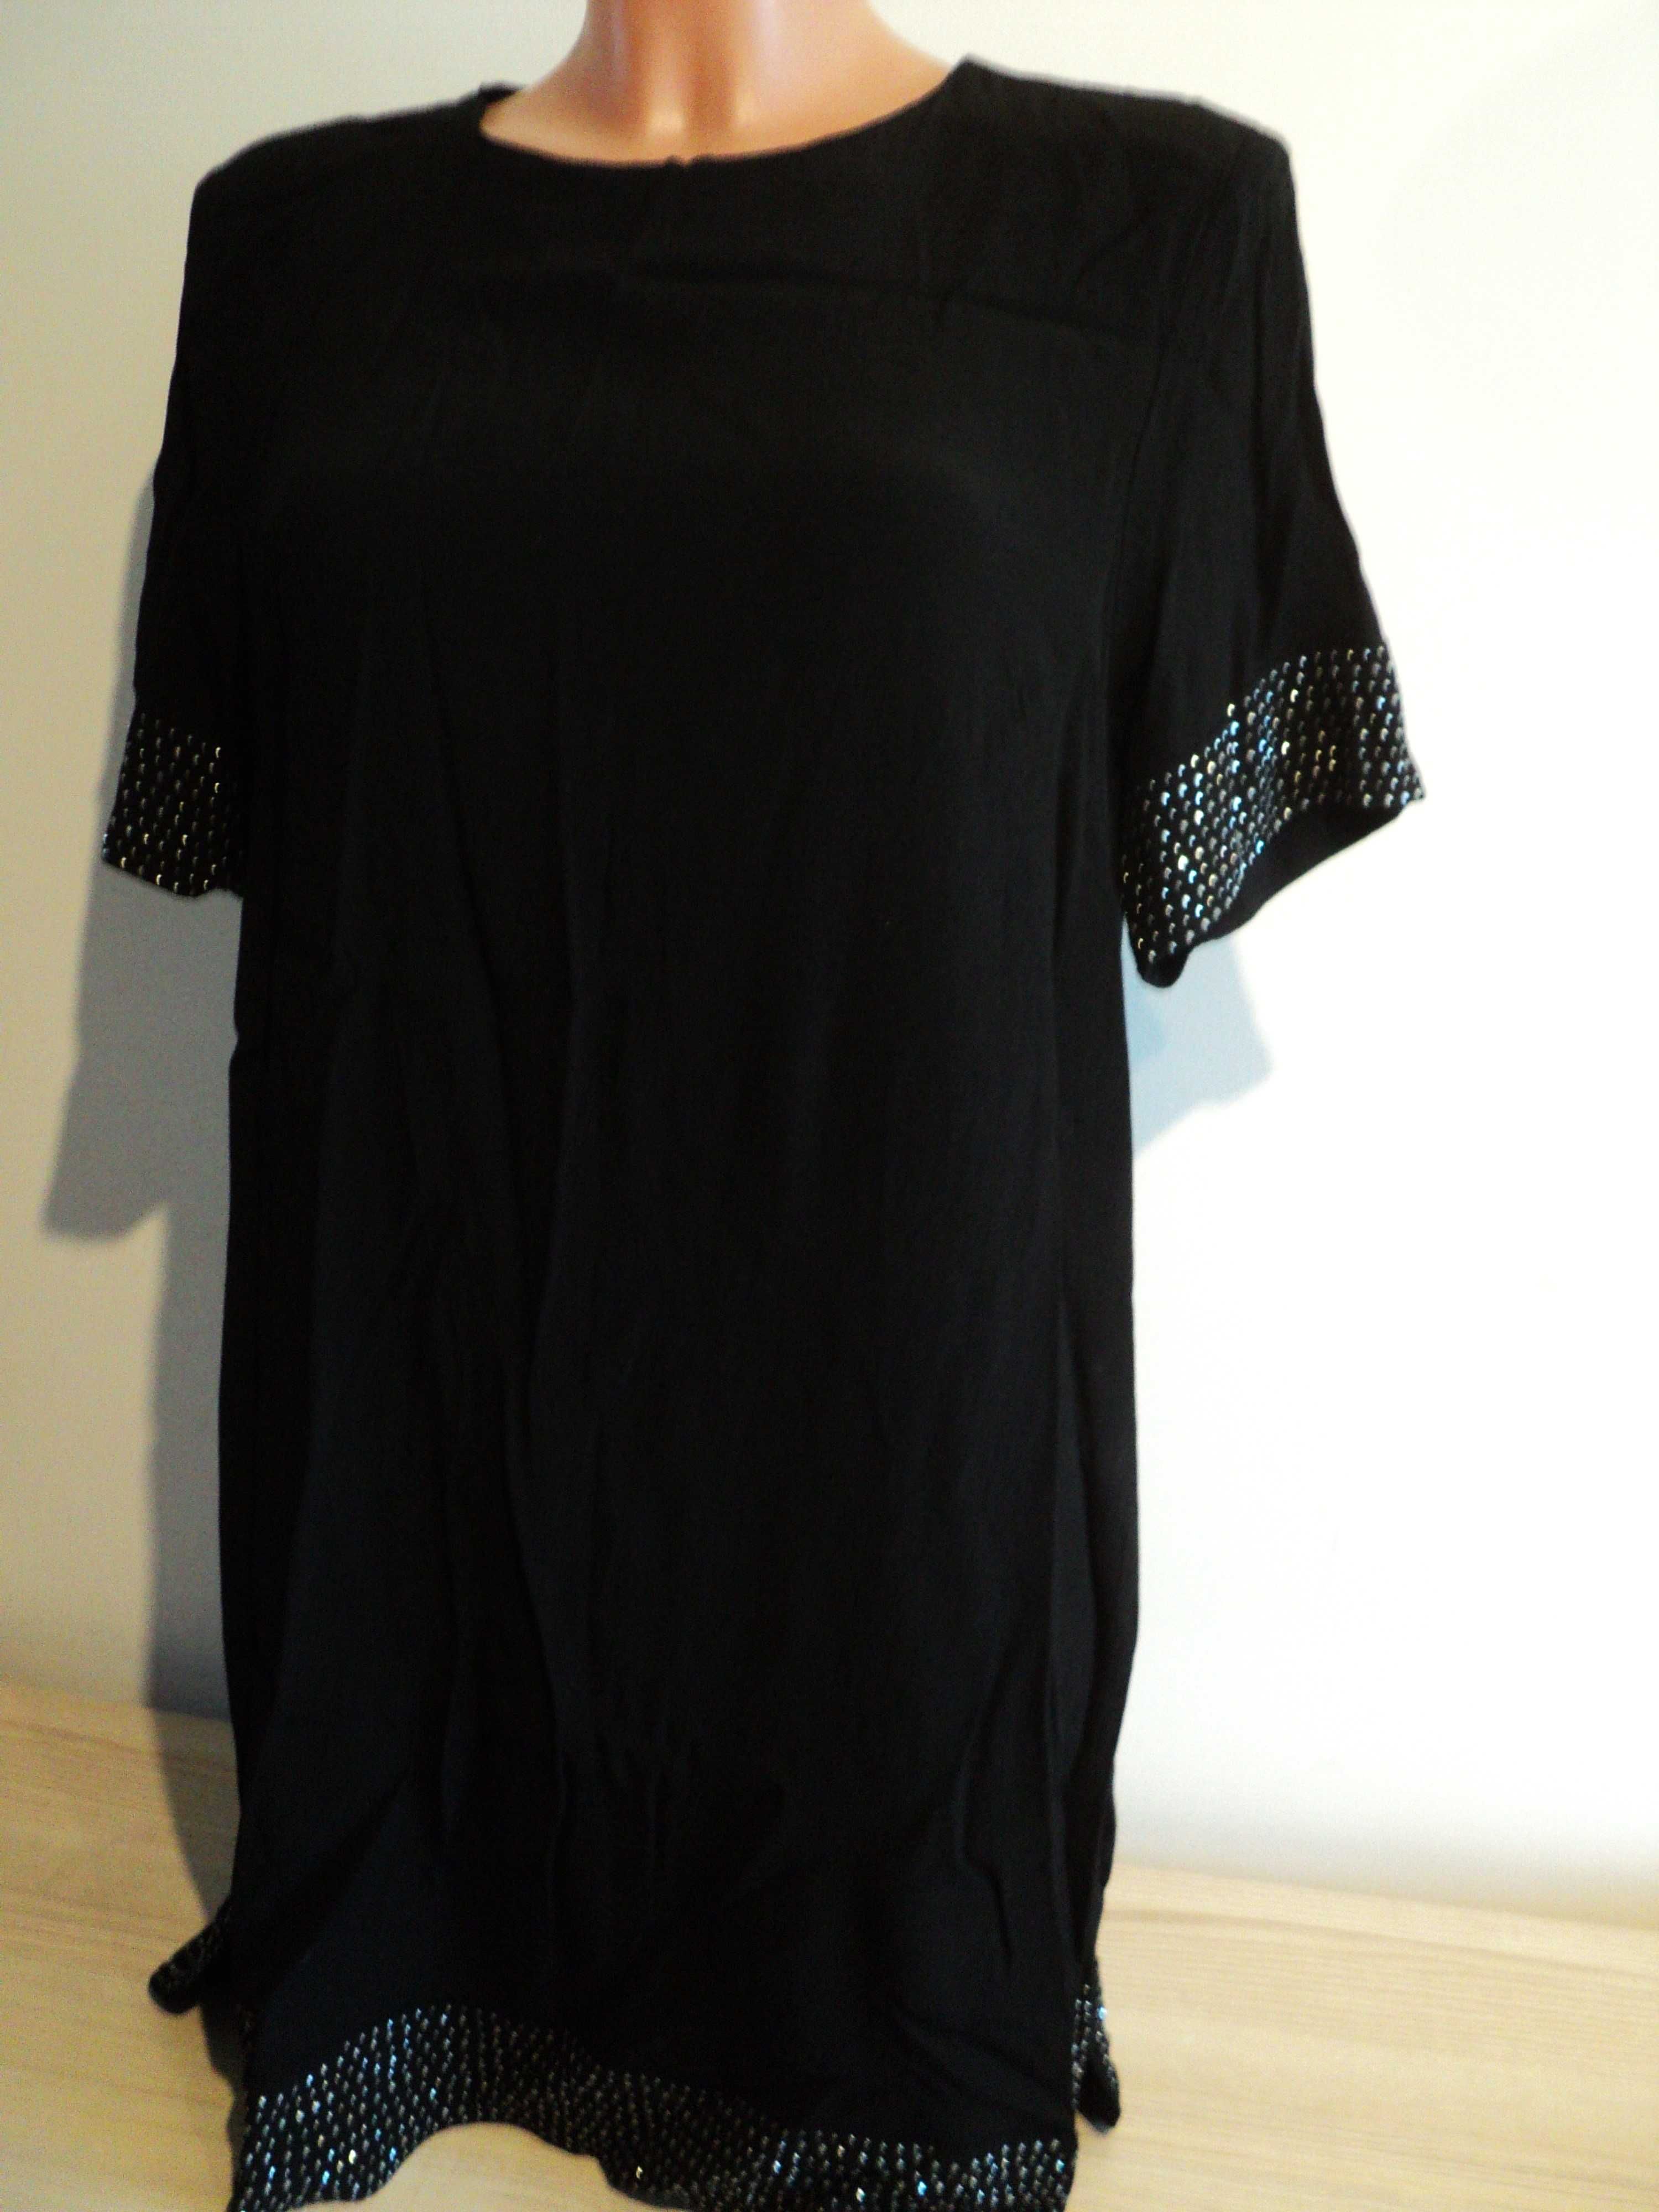 Czarna tunika/ sukienka H&M roz. 40-42, L-XL